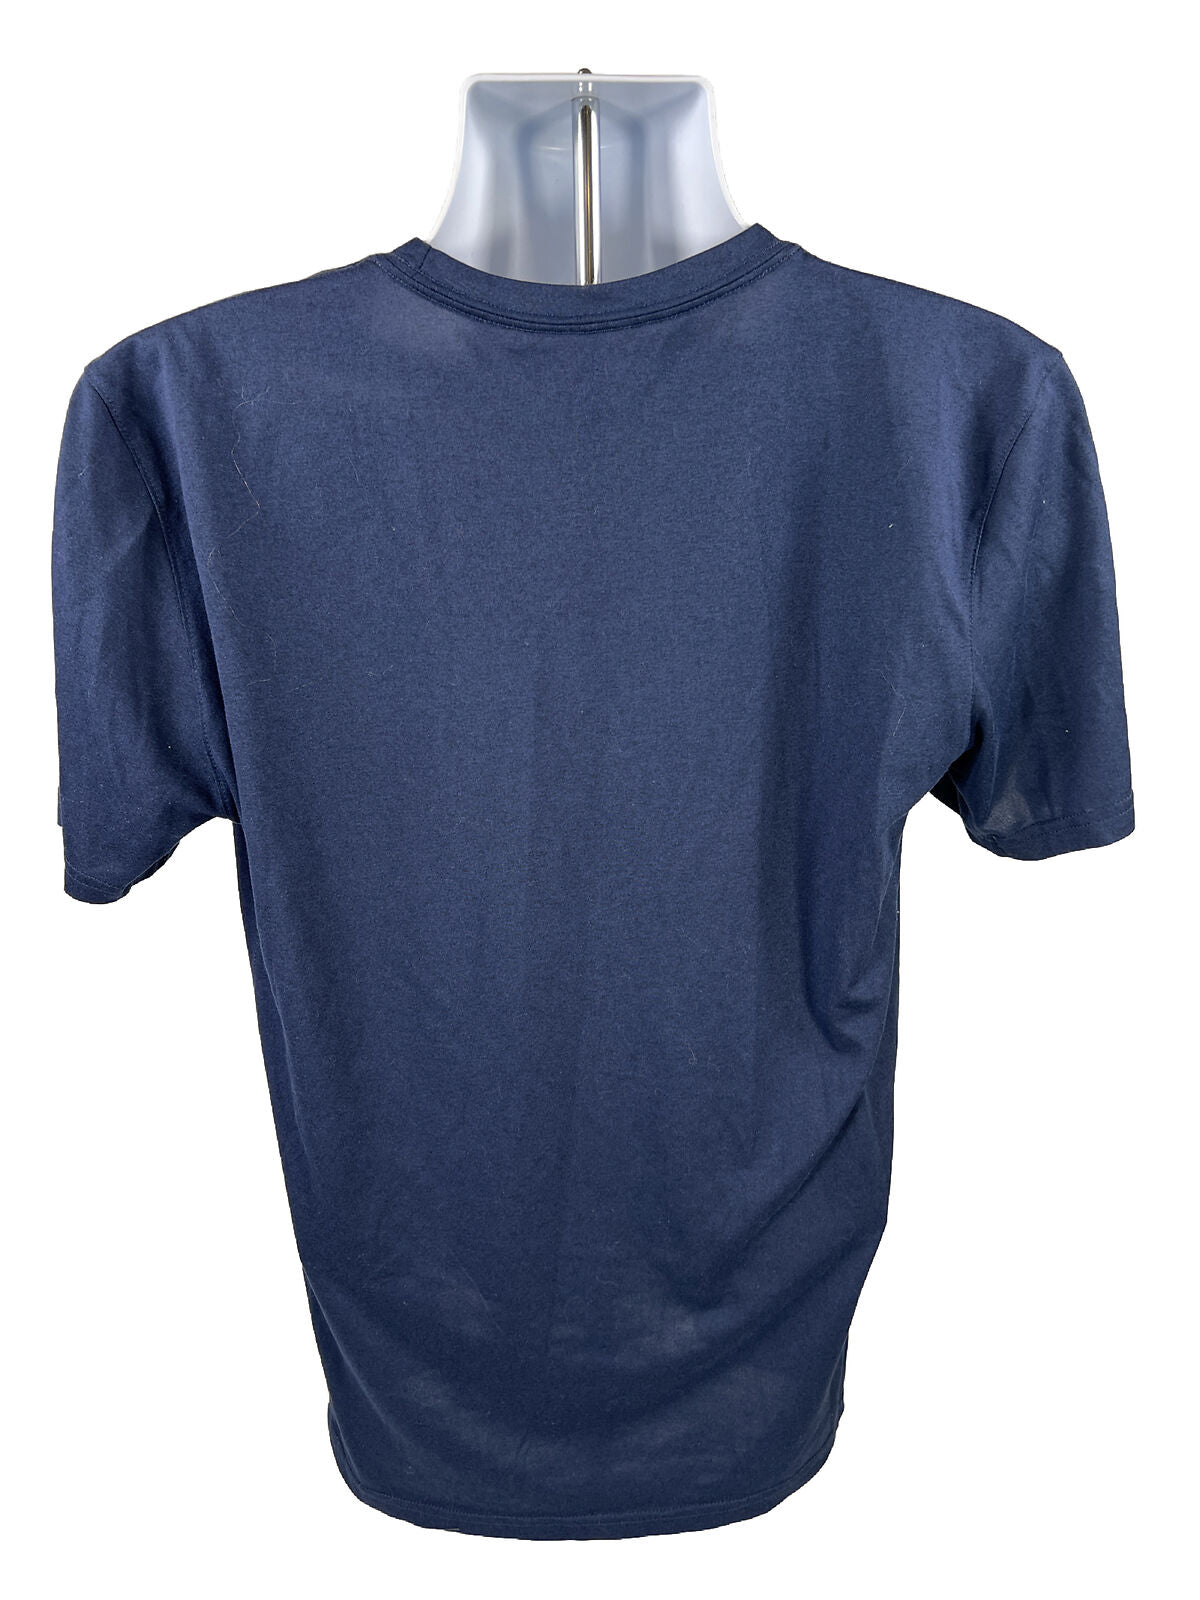 Camiseta deportiva Nike de la Universidad de Michigan azul para hombre - M